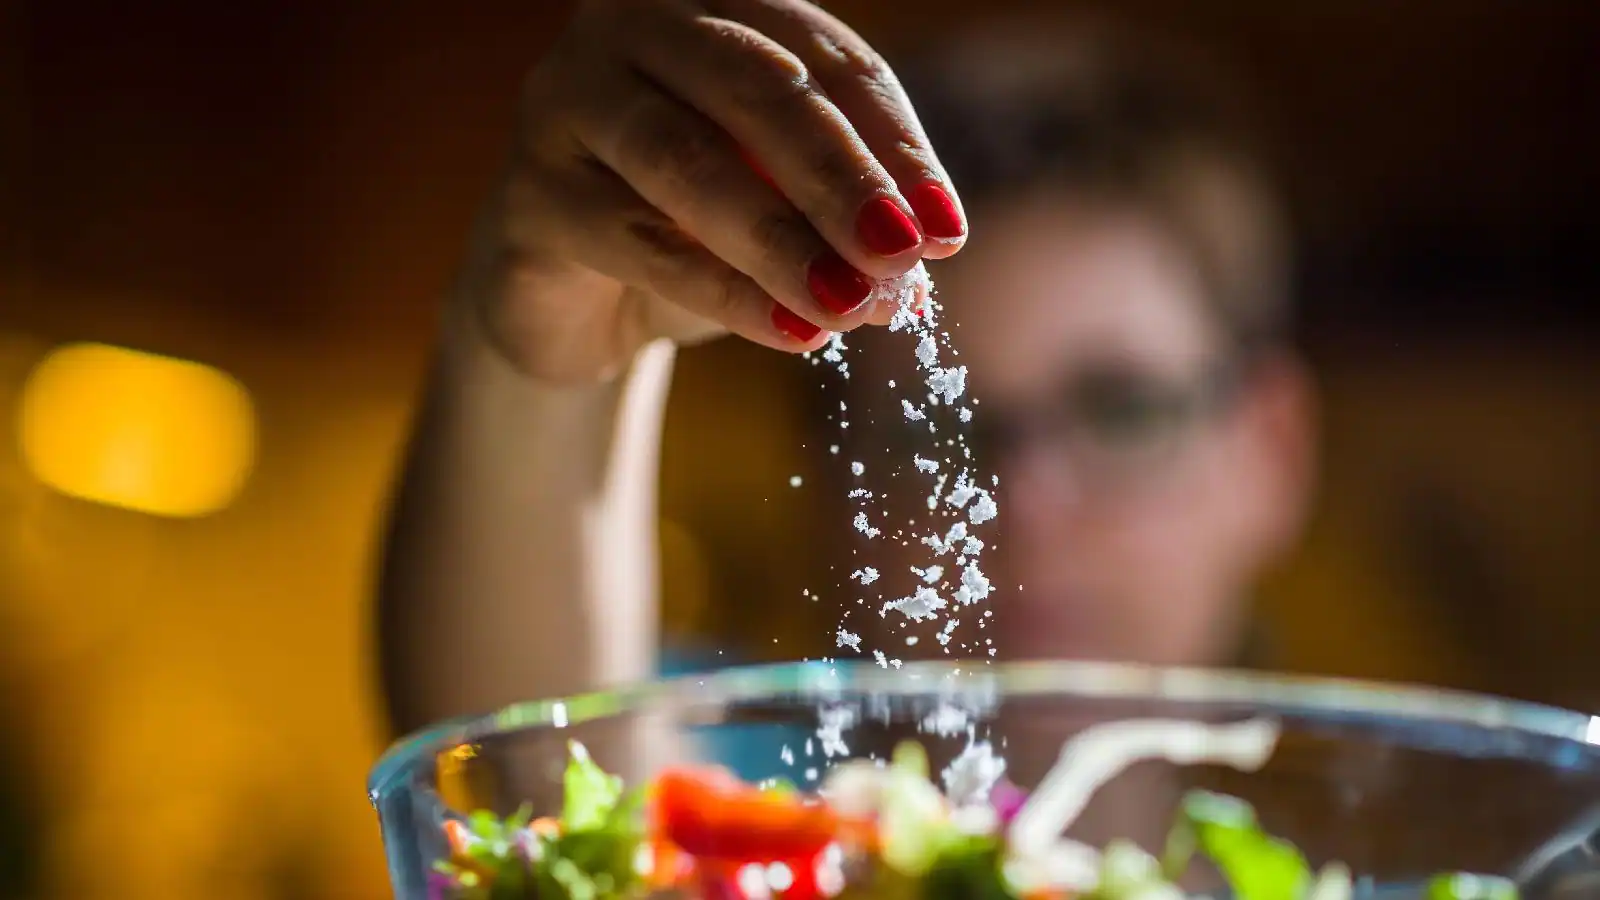 تقليل الملح الزائد في الطعام، دون التخلص منه تمامًا، هي طريقة ينبغي توصية المرضى بها".